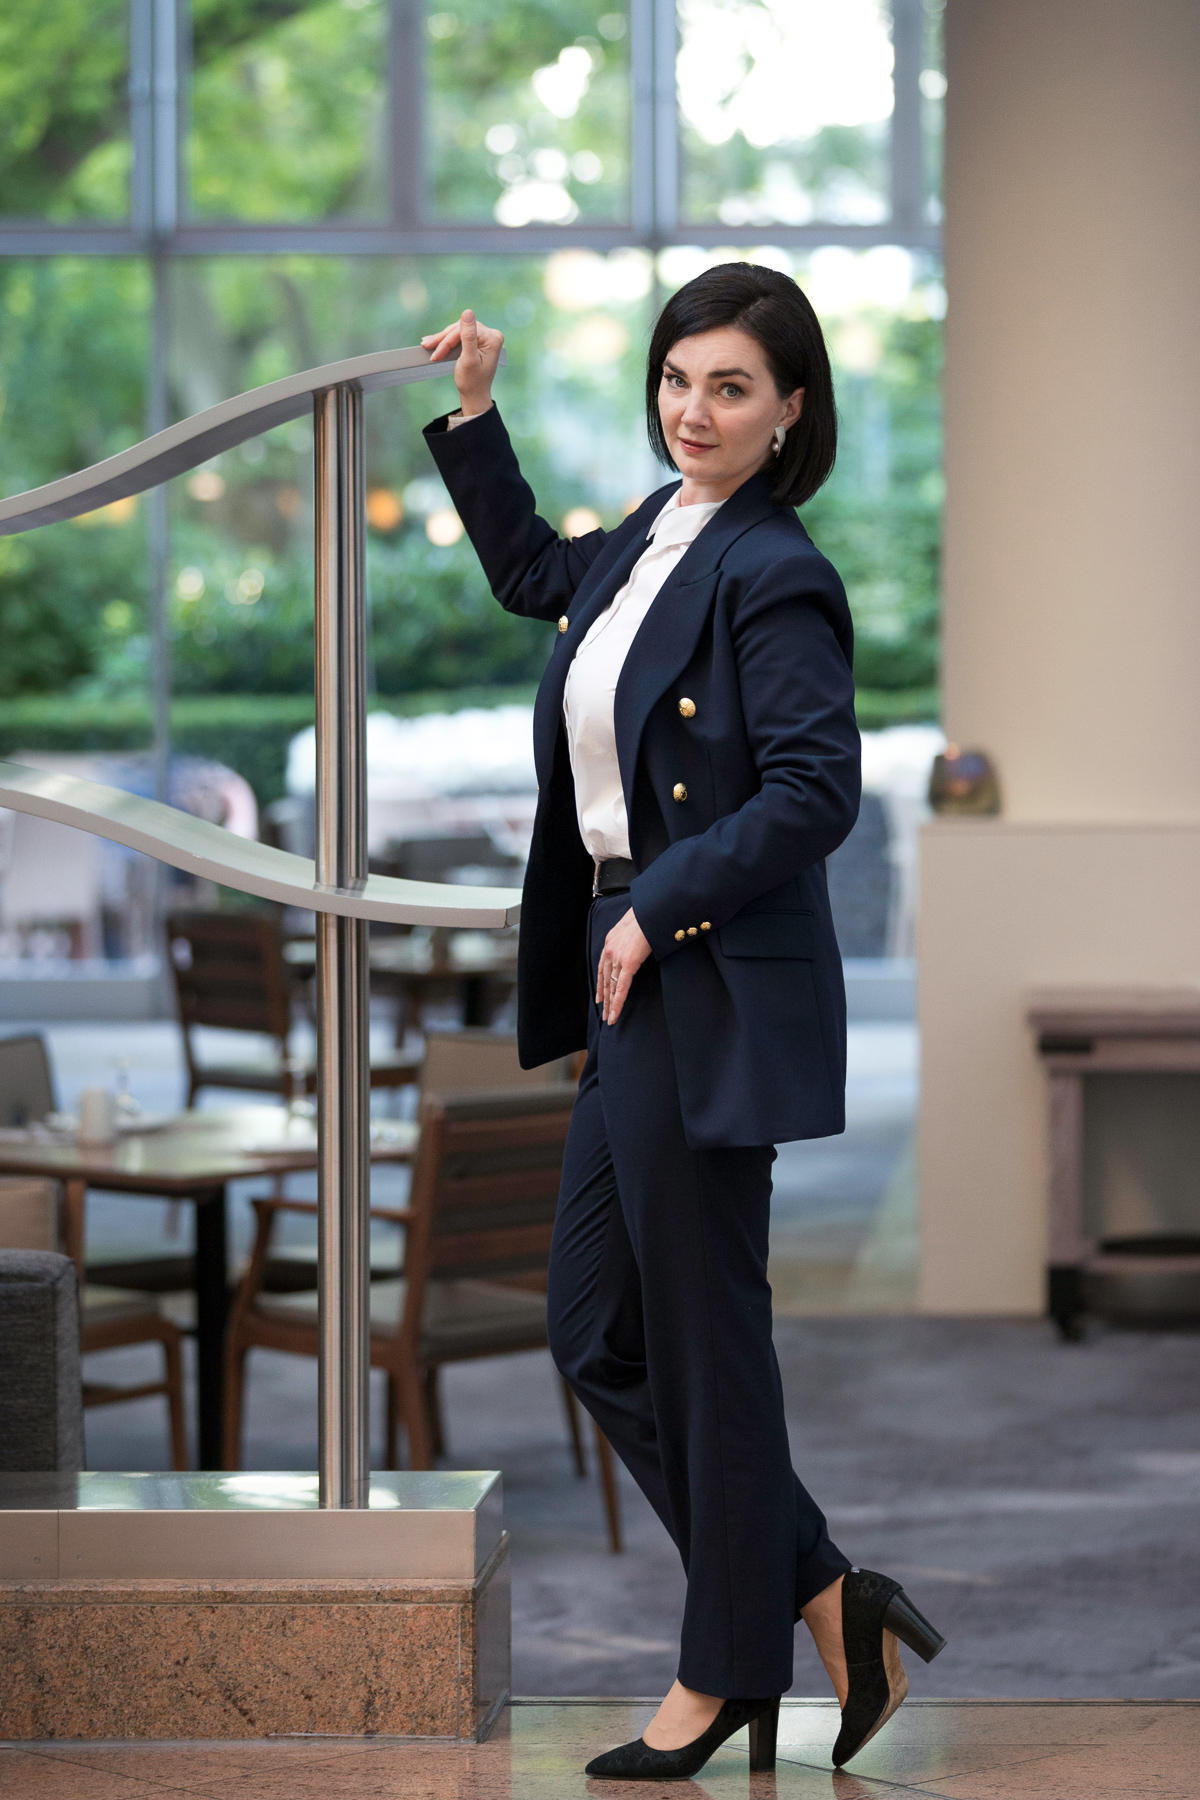 Eine klassisch-businessgekleidete Frau in Ganzkörperaufnahme. Sie hält sich an einer Edelstahlbrüstung mit einer Hand fest und steht in einer lockeren Pose. Im Hintergrund das Restaurant eines Hotels sowie grüner Garten hinter den Fenstern.